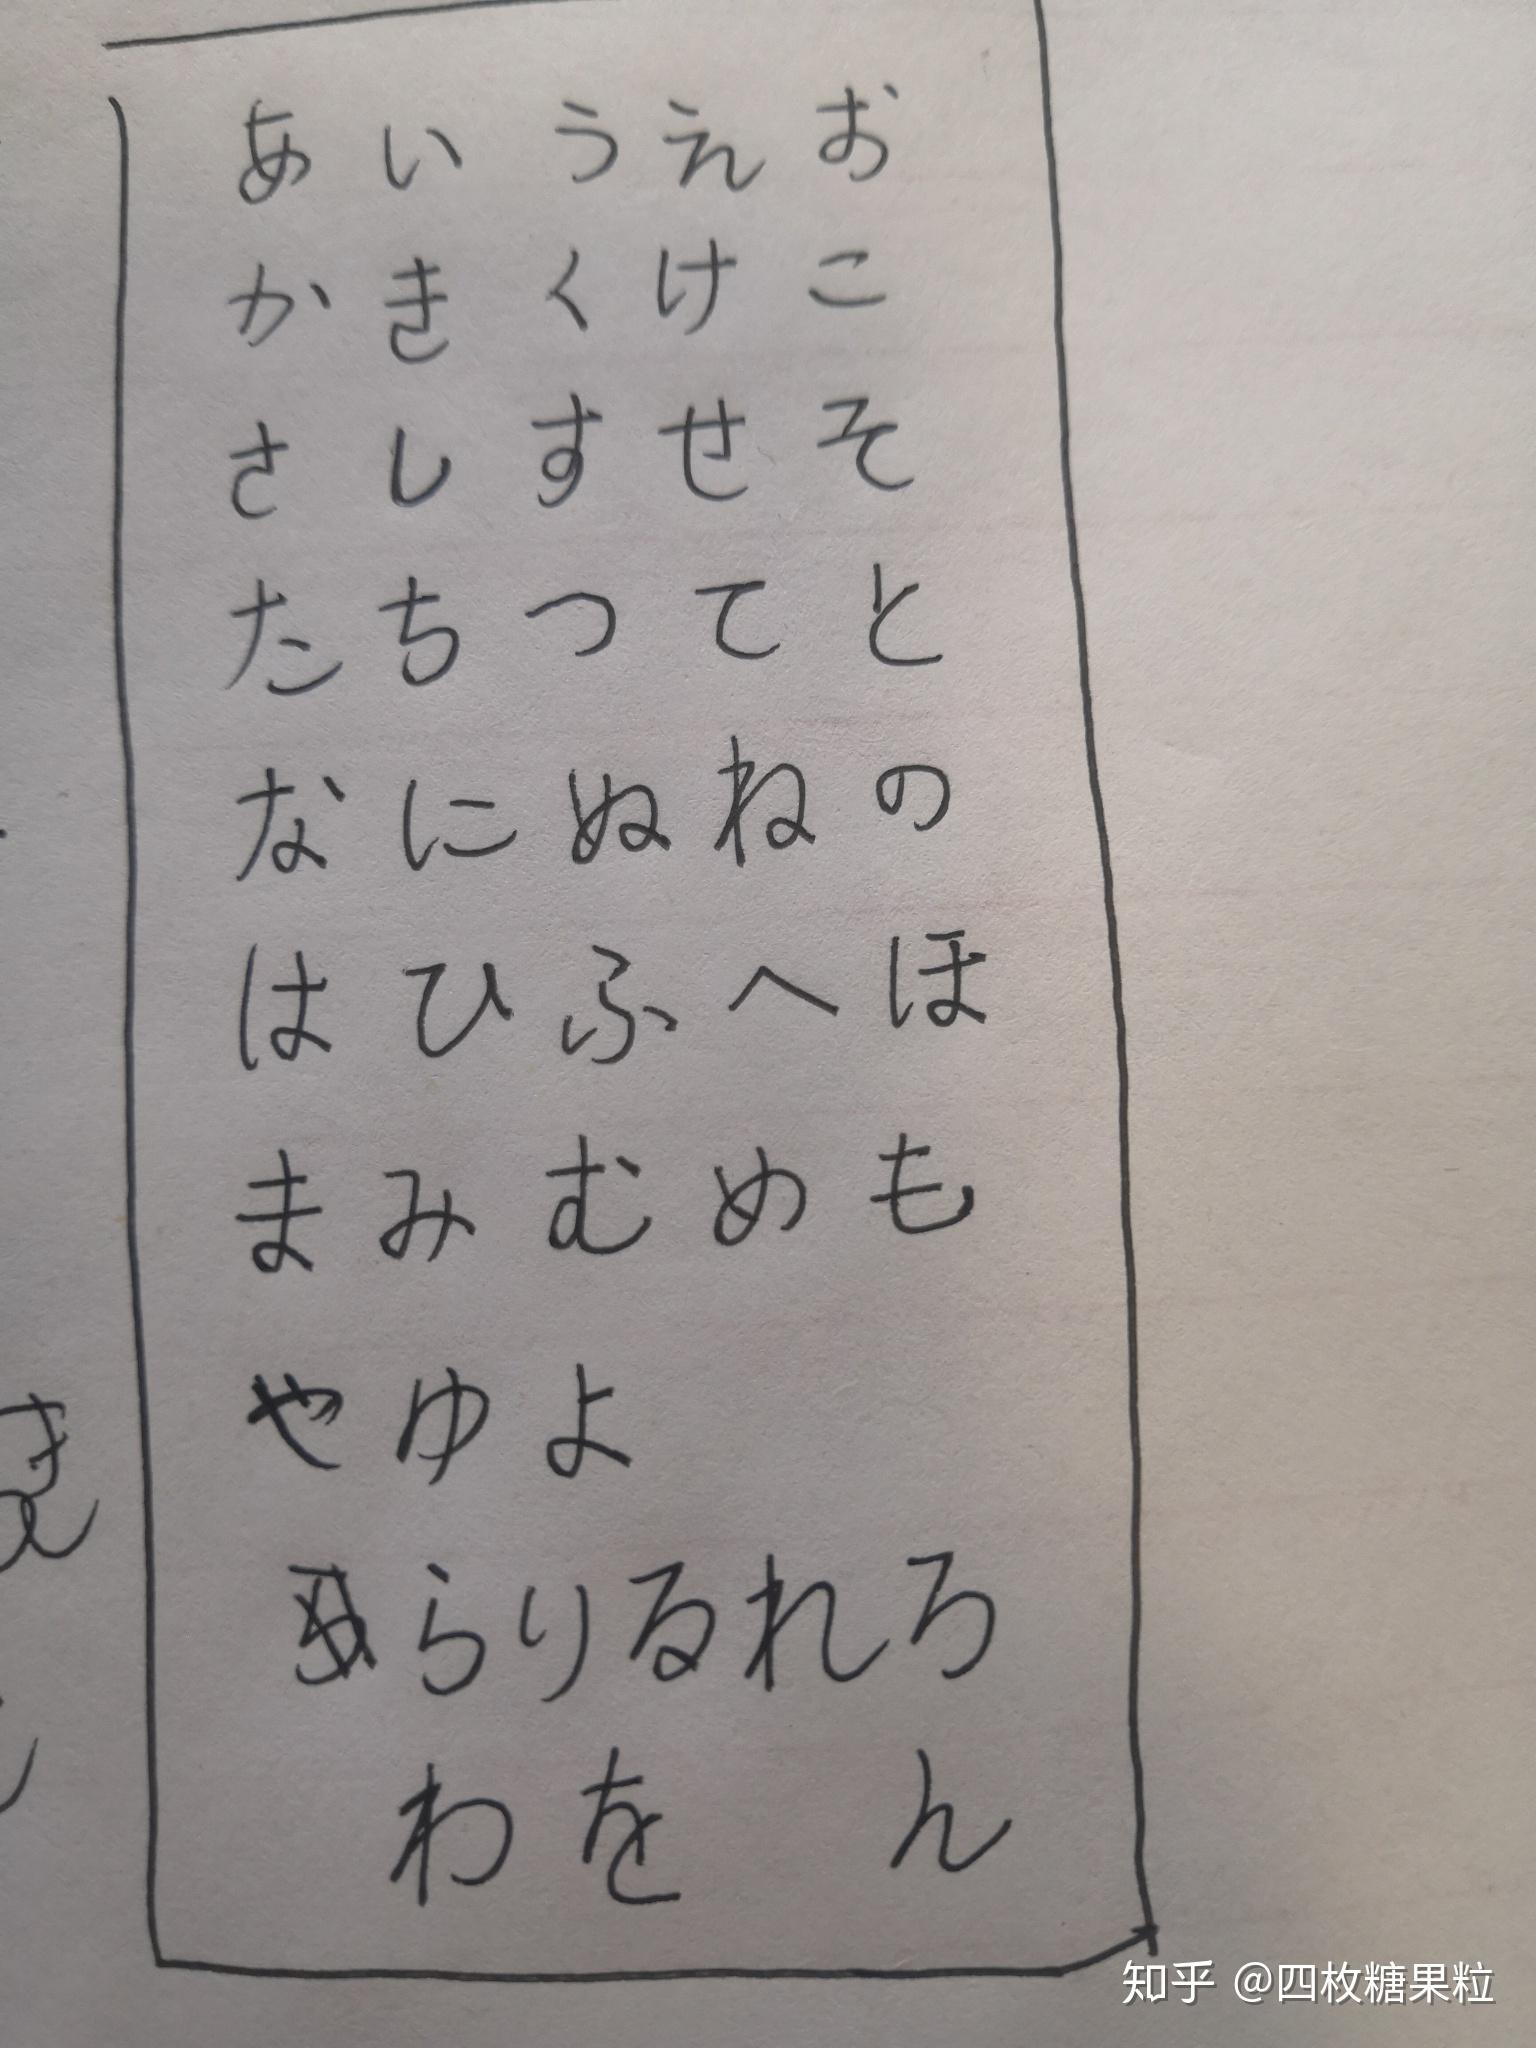 日语五十音图手写可以丑到什么地步?